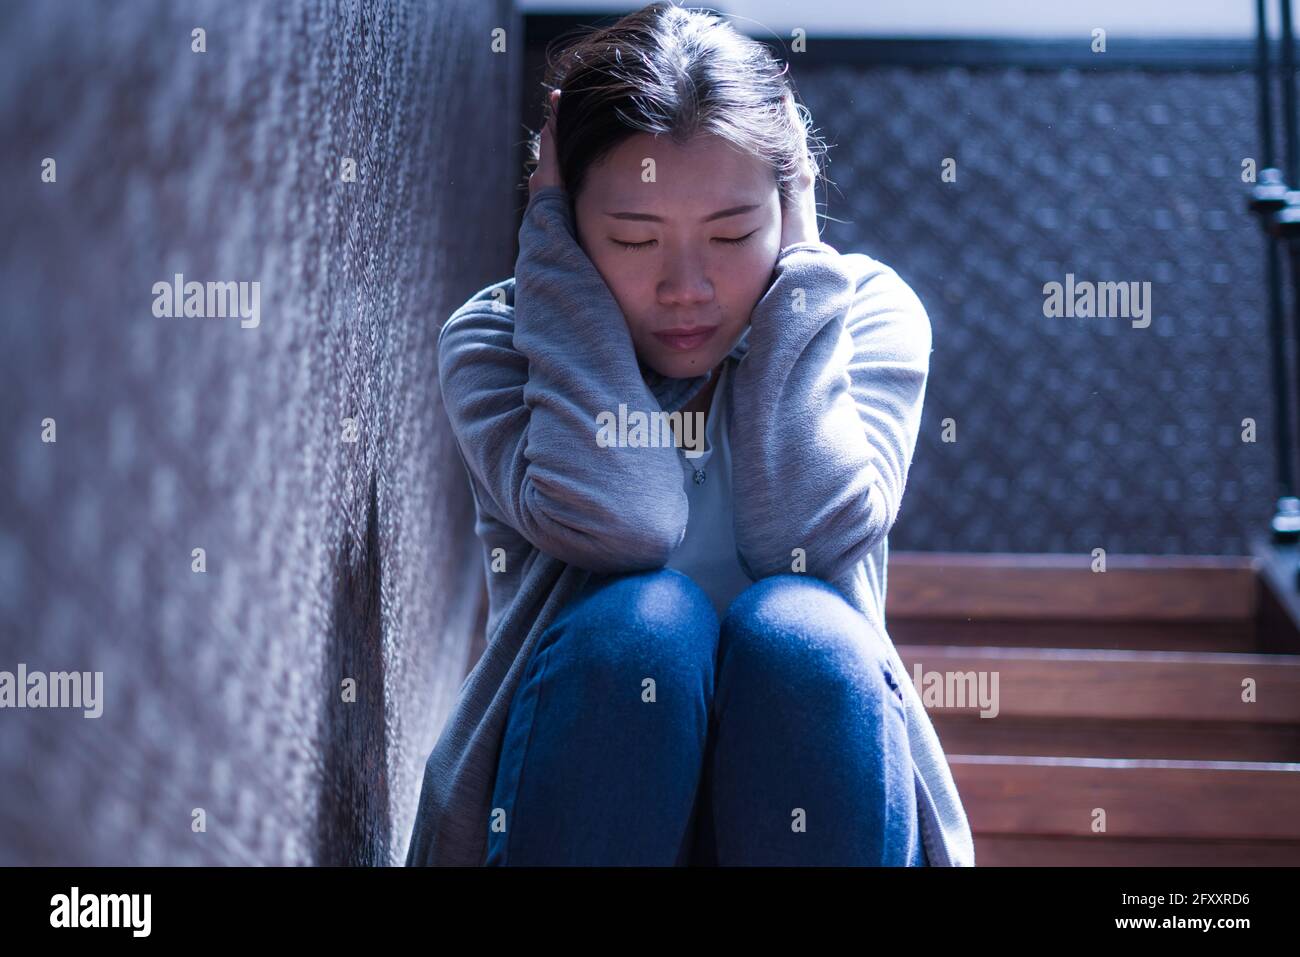 Jeune belle femme asiatique dans la douleur souffrant de dépression - dramatique Portrait à l'intérieur sur l'escalier d'une fille chinoise triste et déprimée comme victime de l'intimidation Banque D'Images